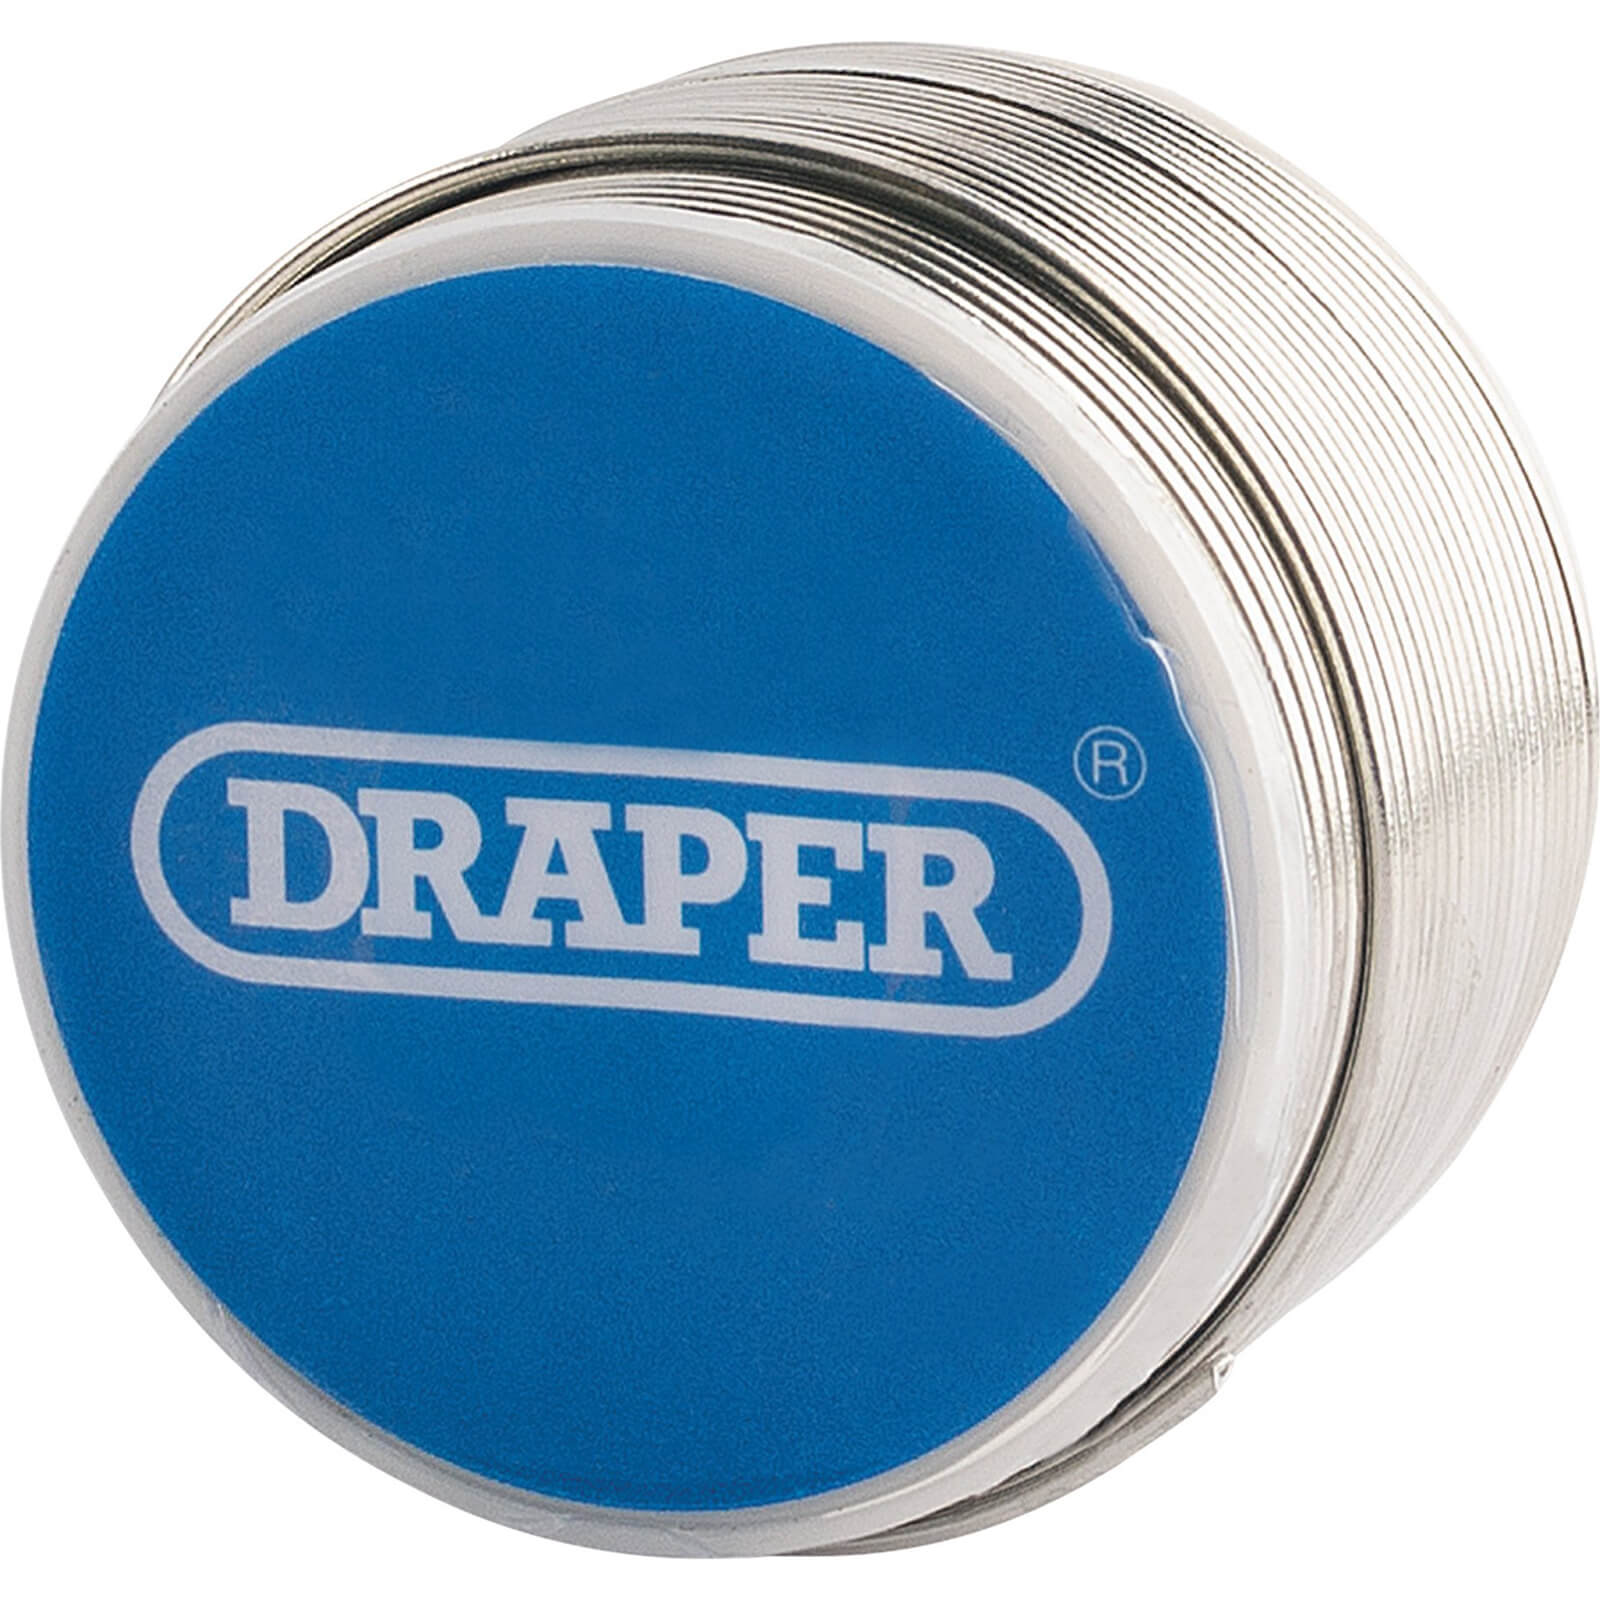 Image of Draper Lead Free Flux Cored Solder Wire Reel 250g